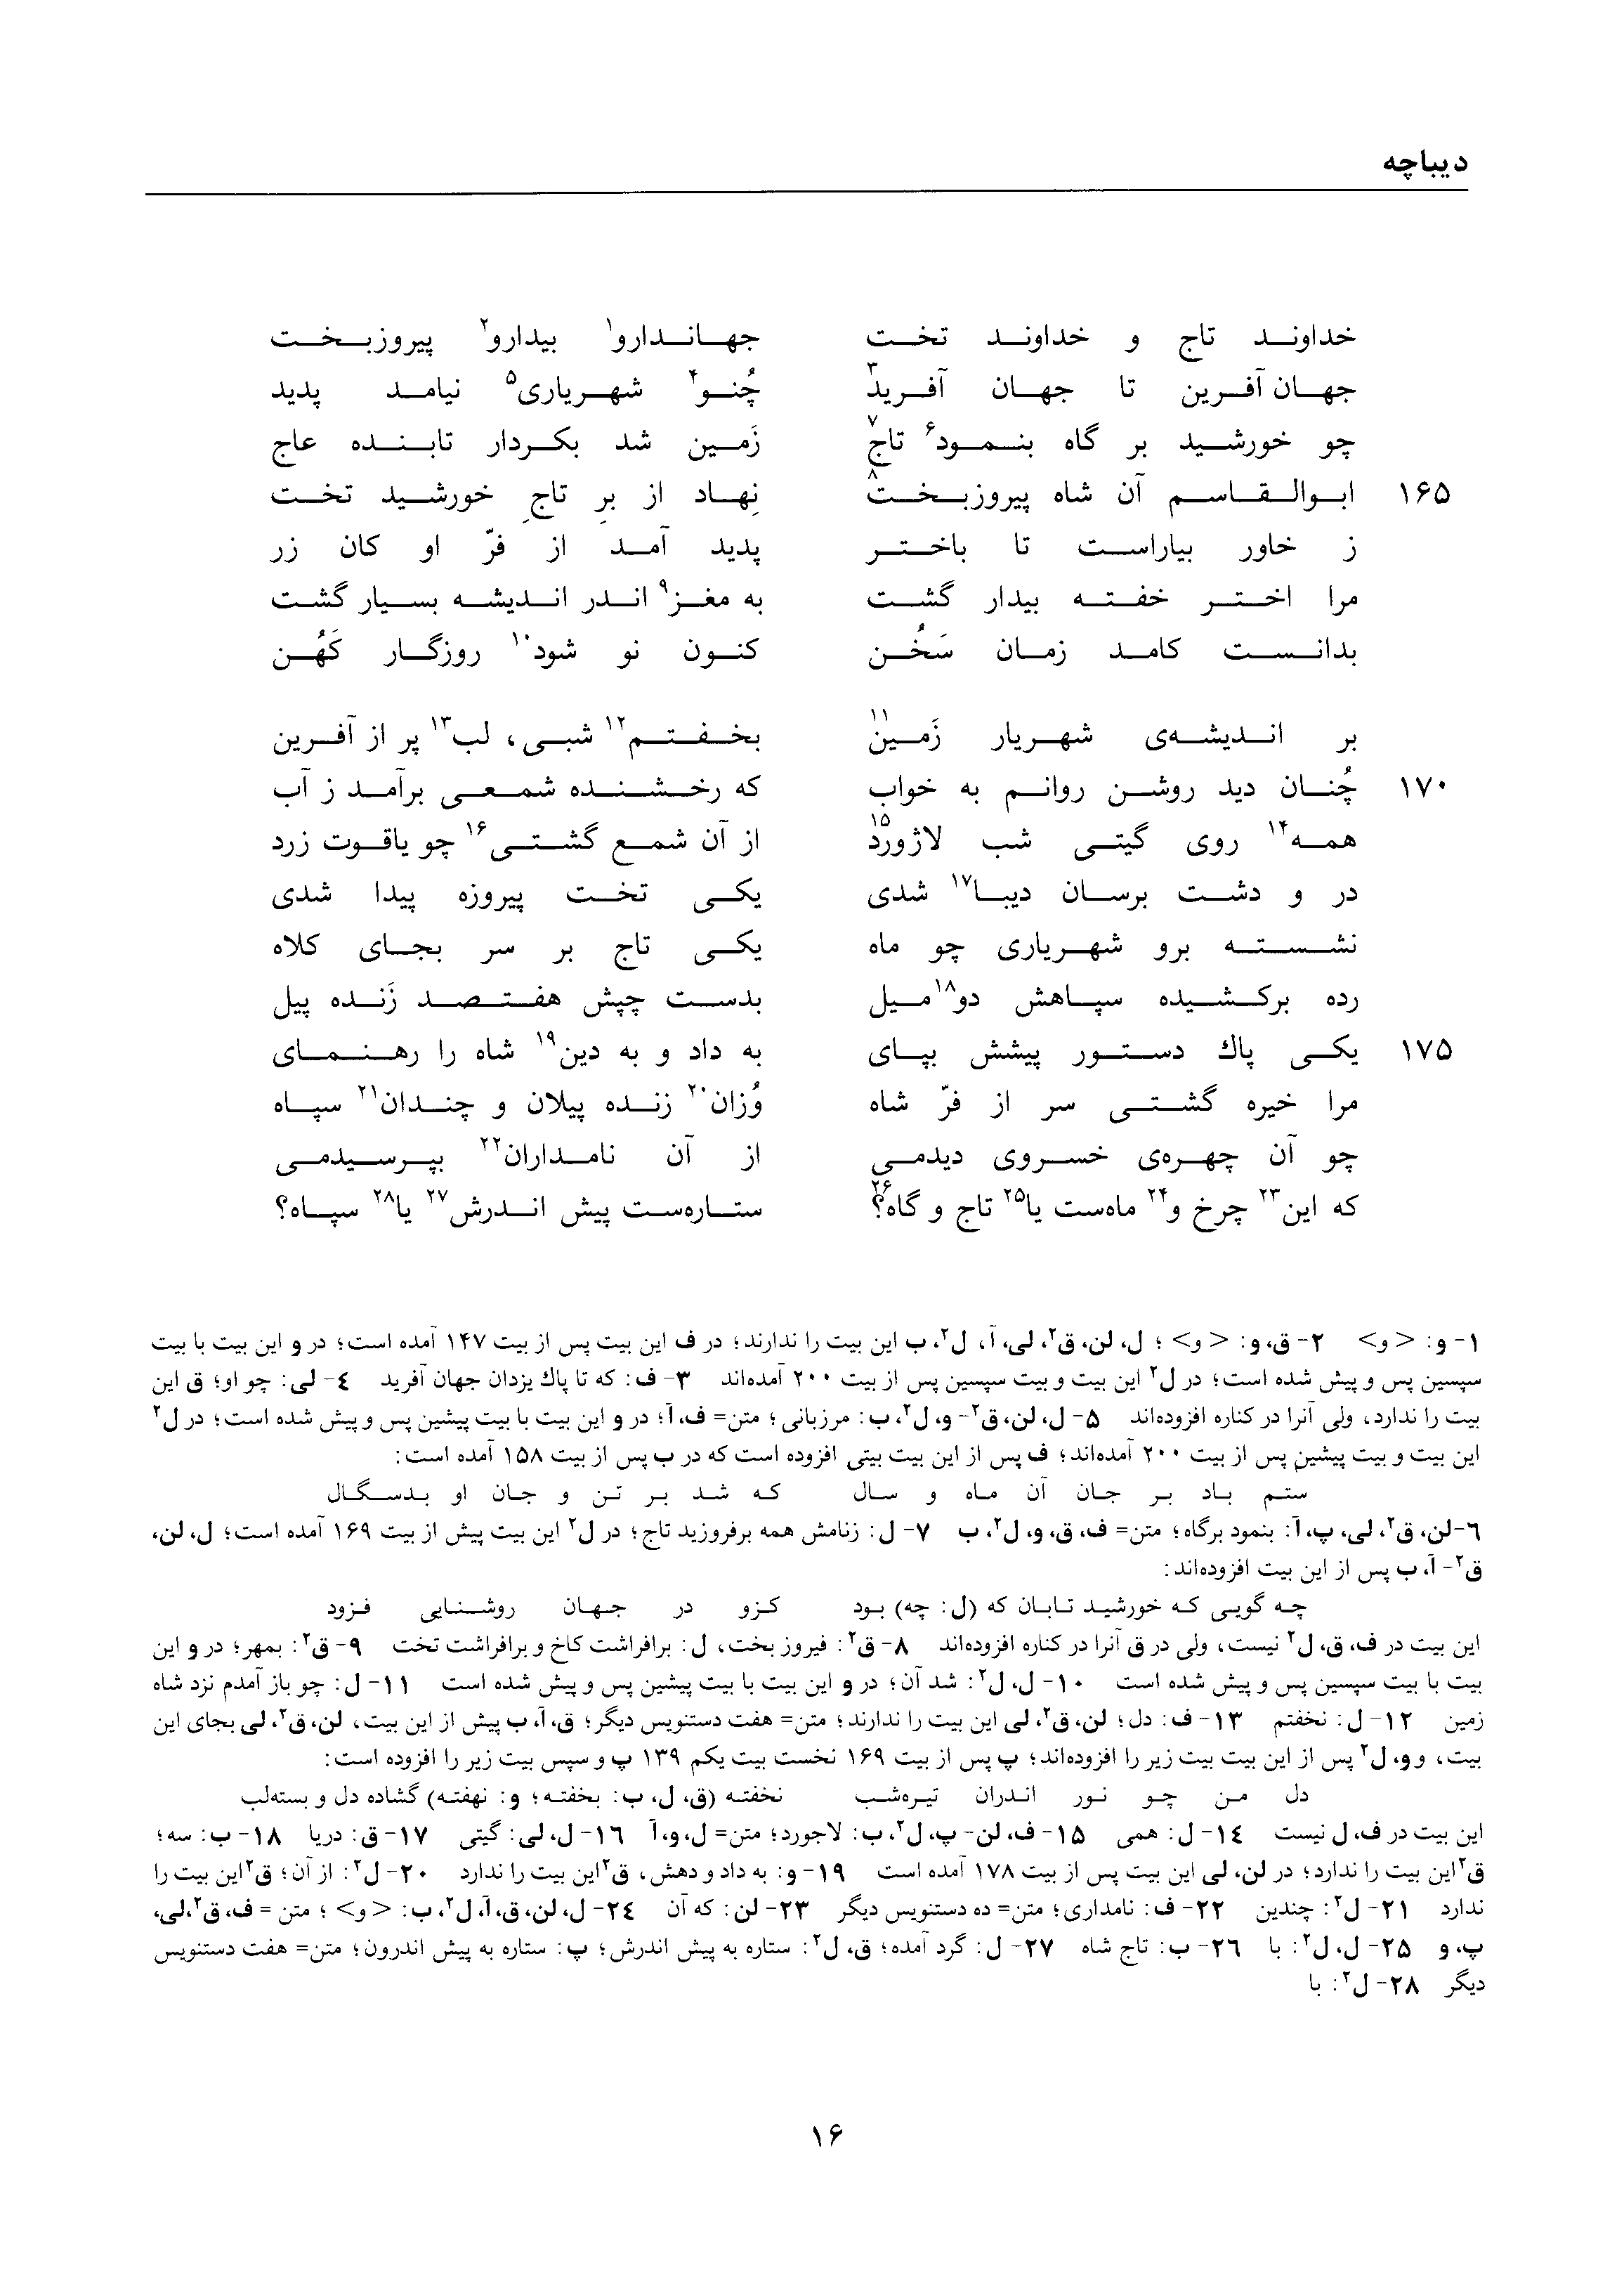 vol. 1, p. 16